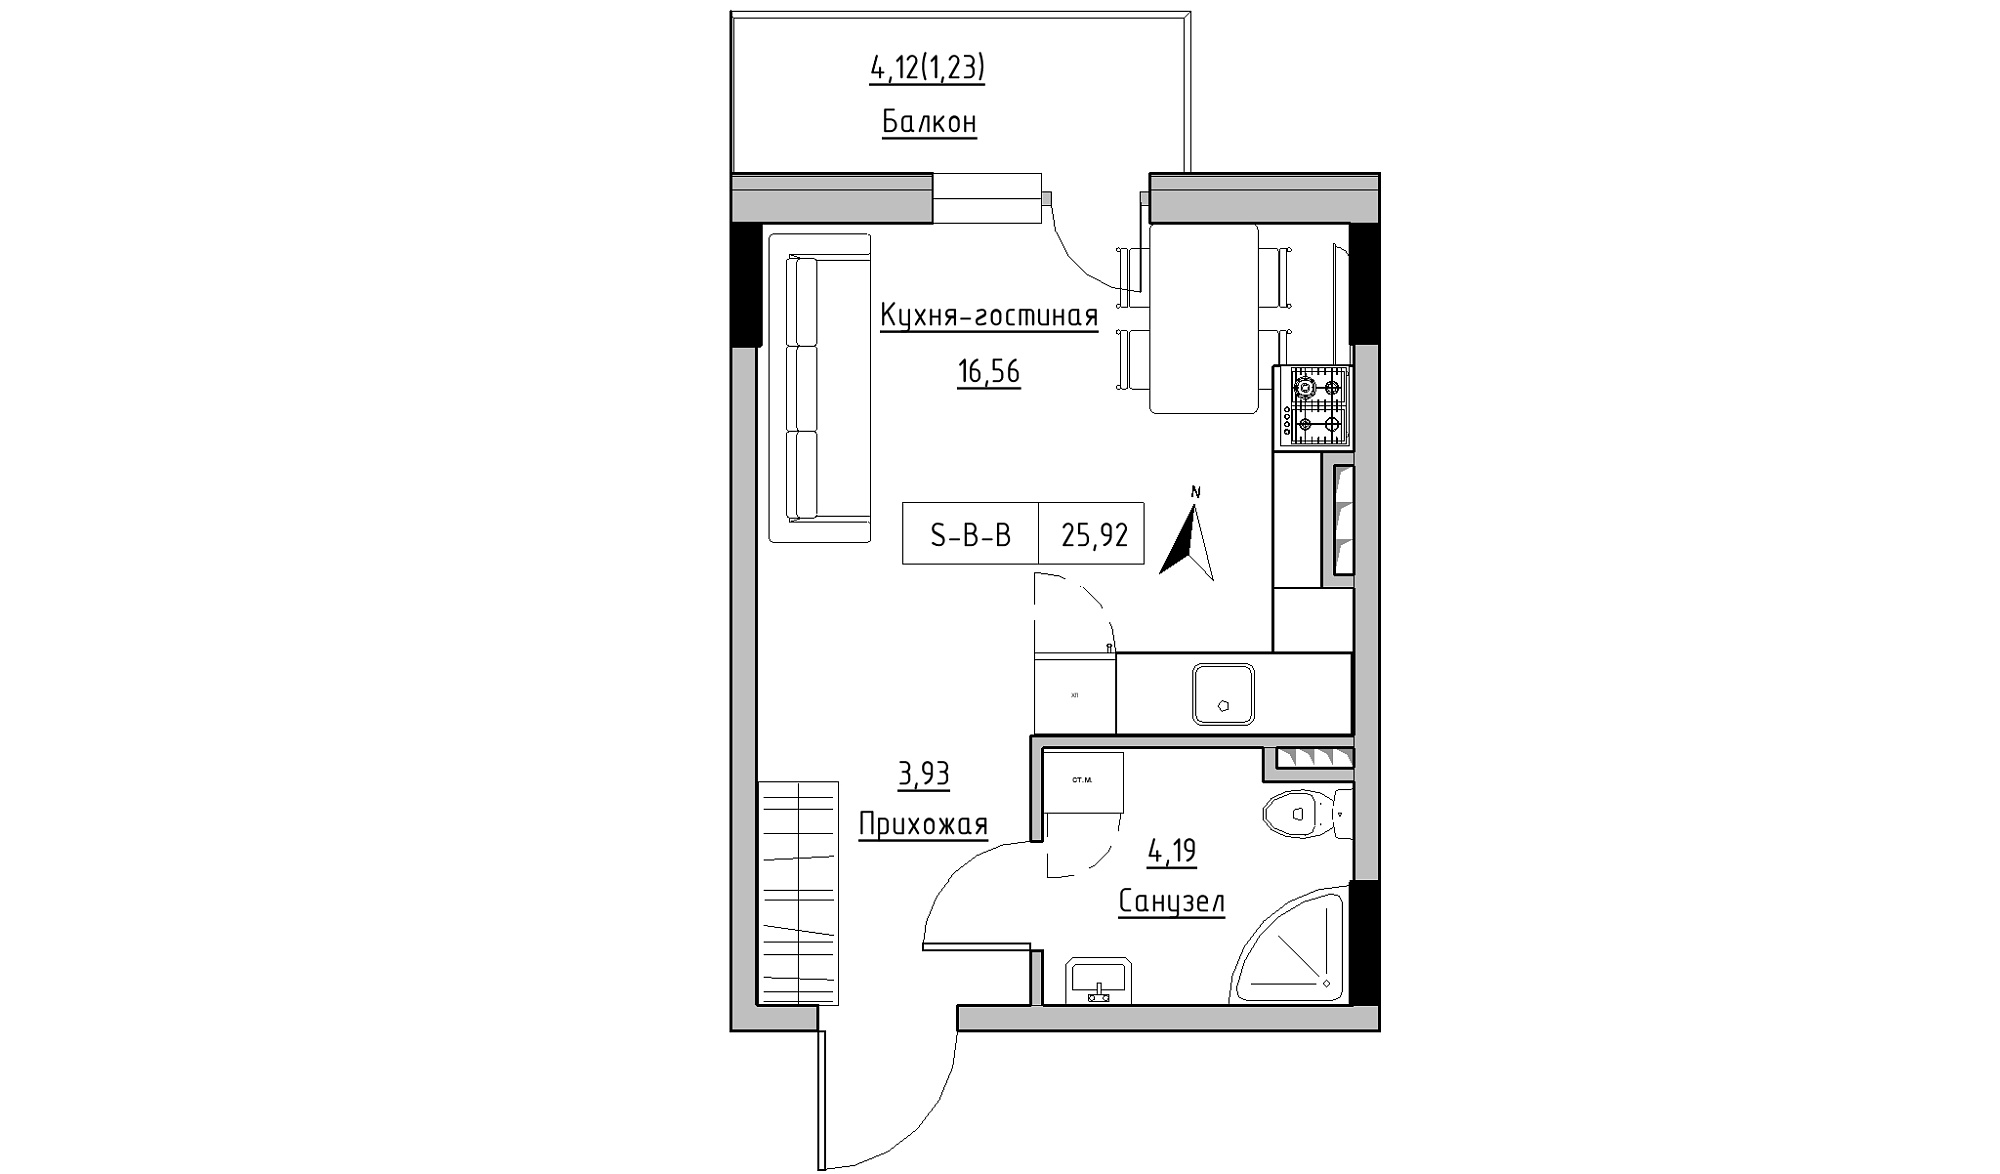 Планування Smart-квартира площею 25.92м2, KS-025-03/0007.